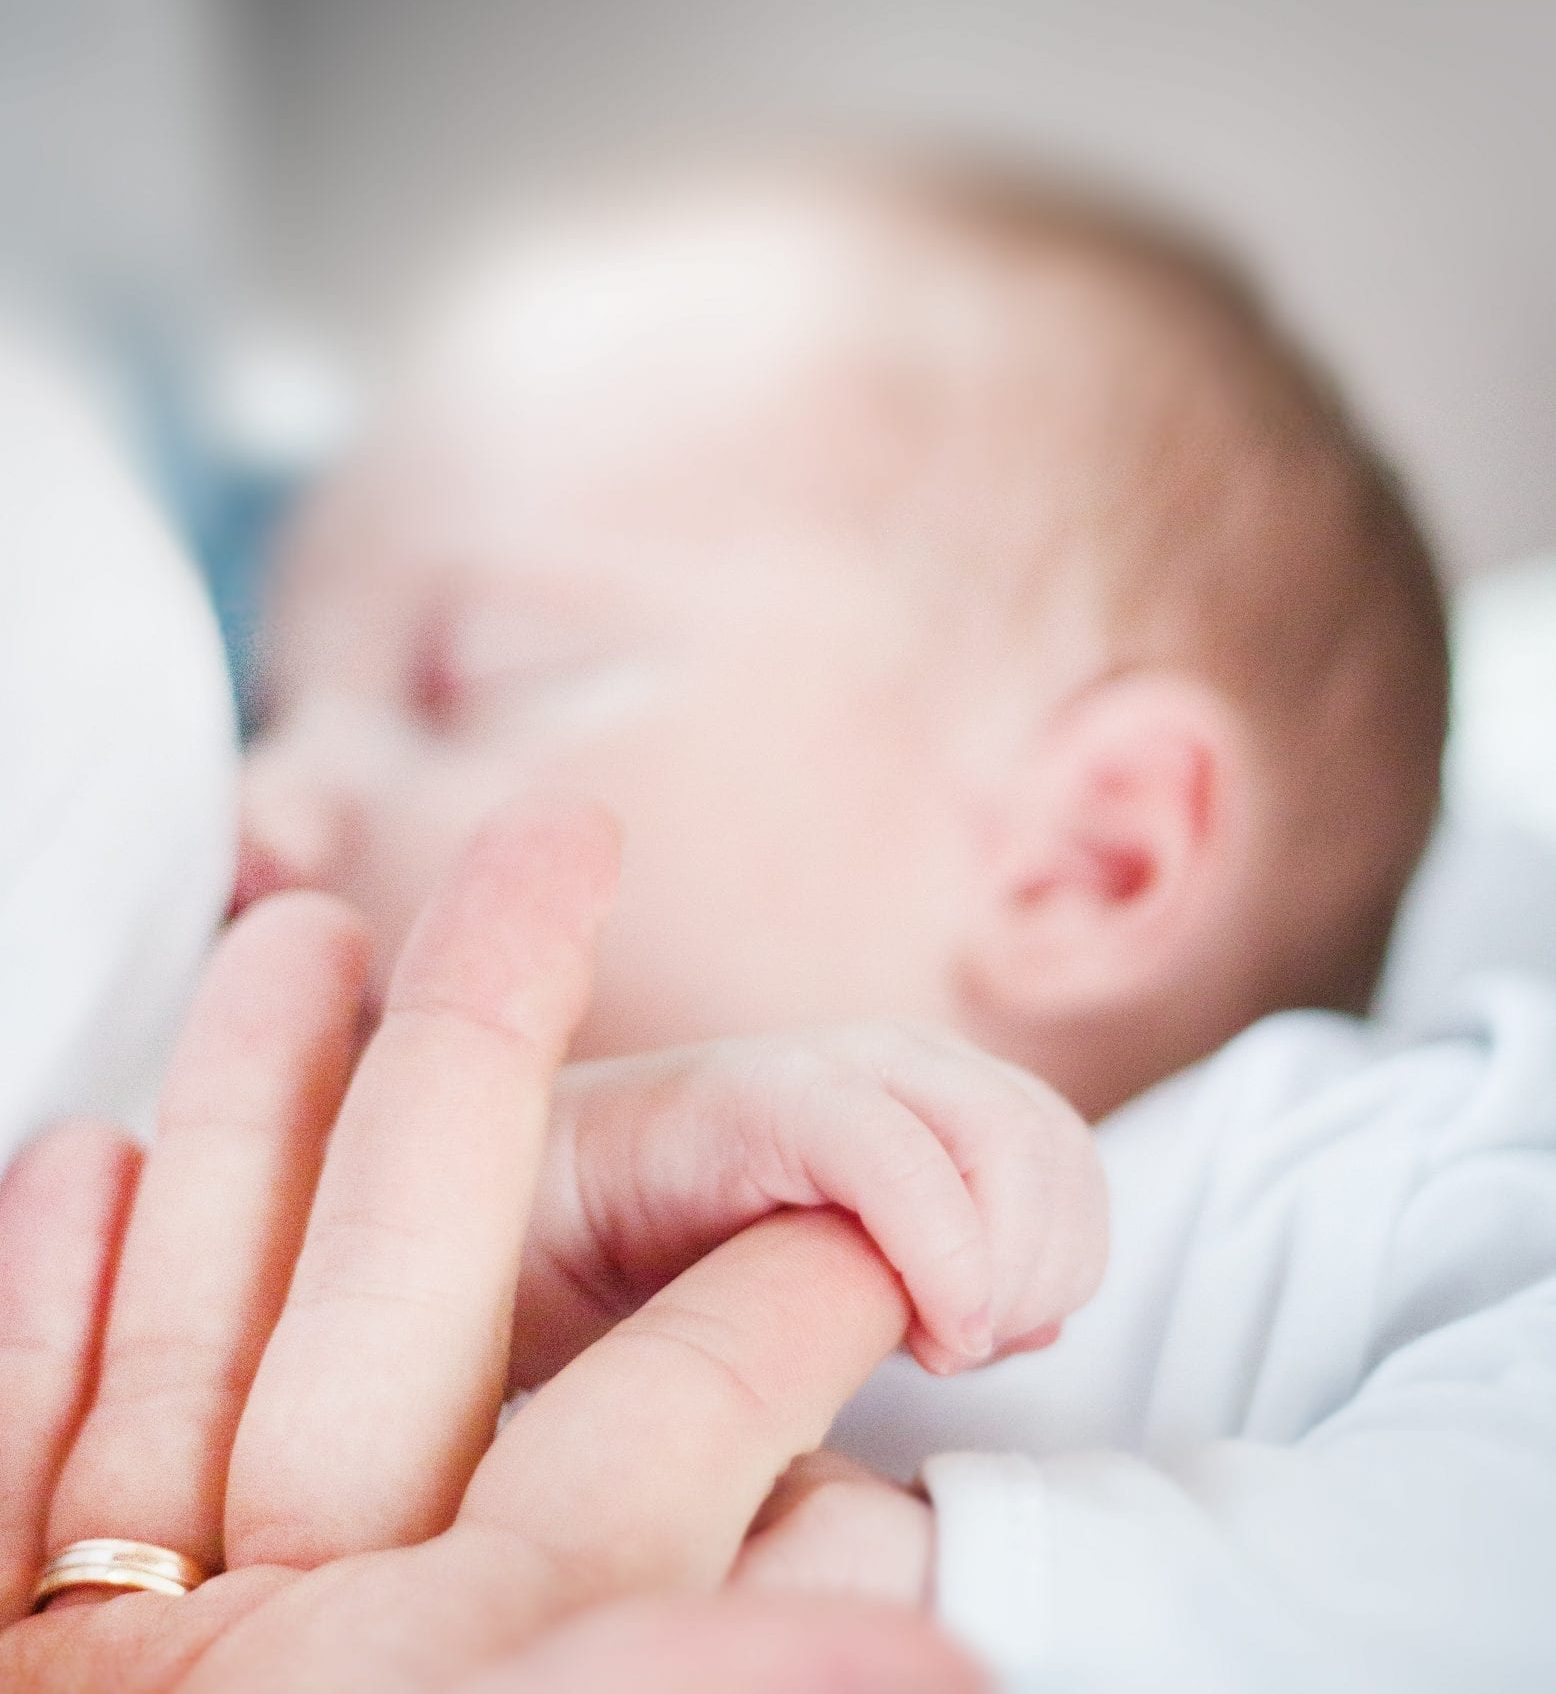 Infant breast feeding